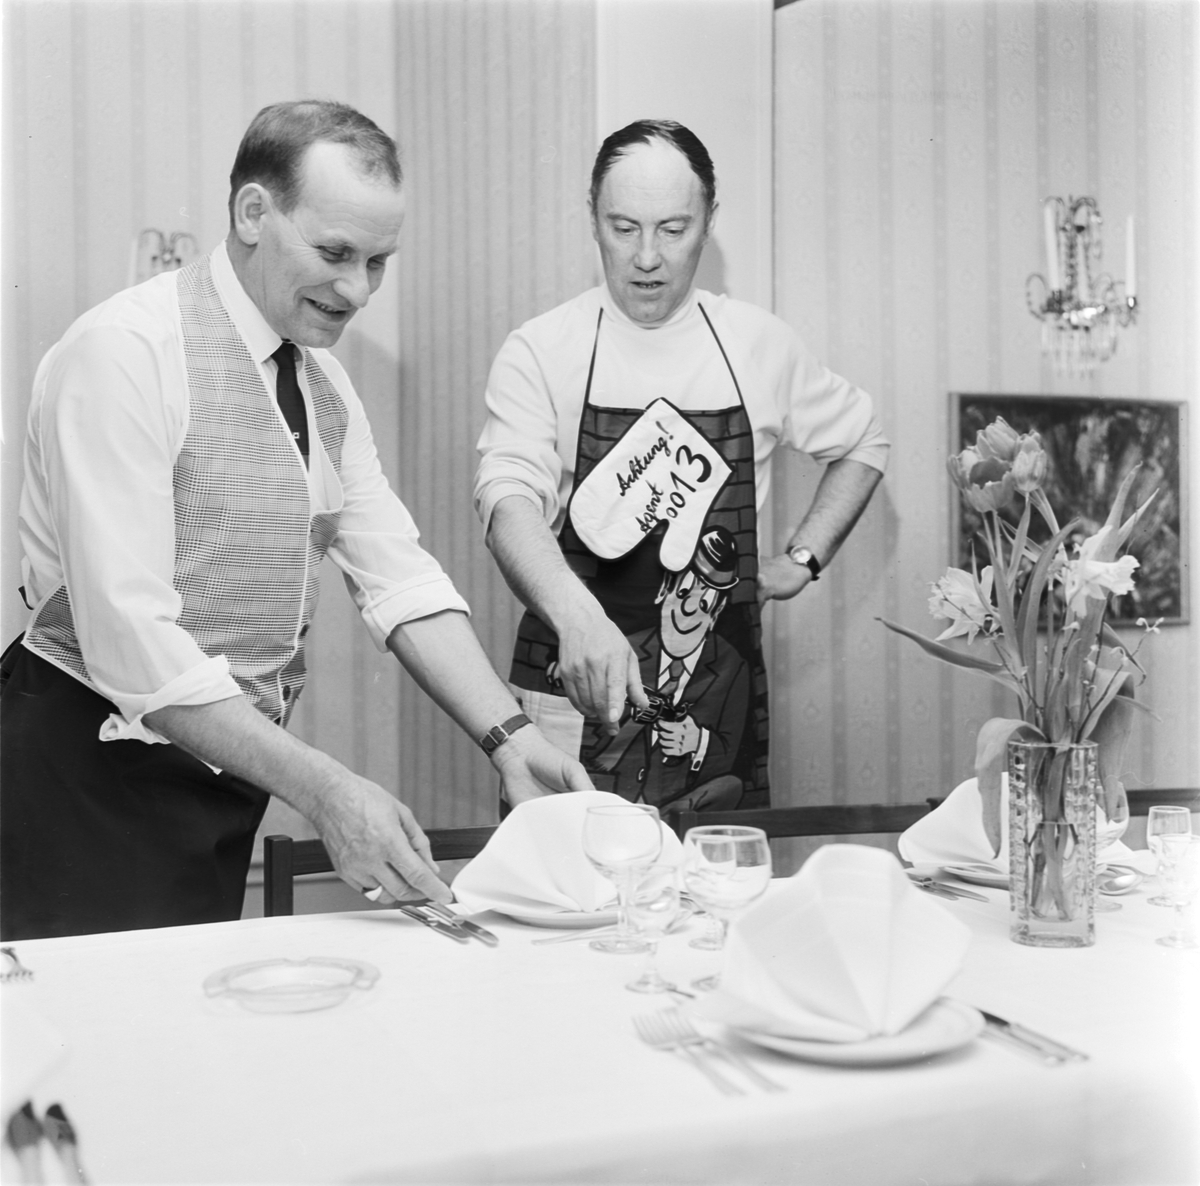 Matlagningskurs på Gästis, Tierp, Uppland 1969